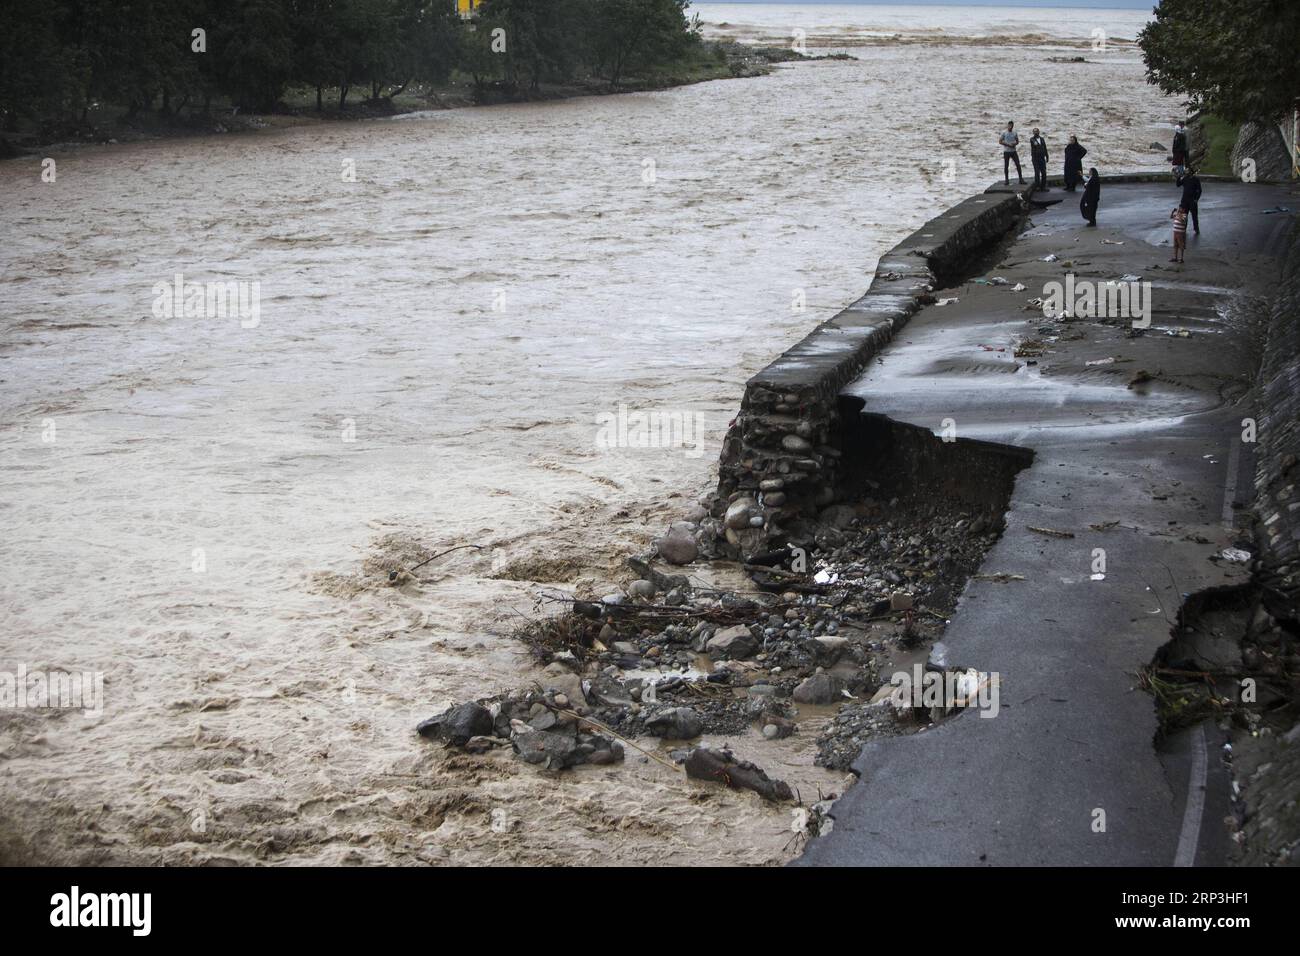 (181007) -- TONEKABON, 7 octobre 2018 -- la photo prise le 6 octobre 2018 montre la rivière inondée dans la ville de Tonekabon, dans la province de Mazandaran, au nord de l'Iran, le 6 octobre 2018. Les fortes pluies dans les régions nord et nord-ouest de l'Iran au cours des deux derniers jours ont coûté la vie à au moins sept personnes, a rapporté samedi l'agence de presse semi-officielle ISNA. (dtf) IRAN-TONEKABON-FLOOD AhmadxHalabisaz PUBLICATIONxNOTxINxCHN Banque D'Images